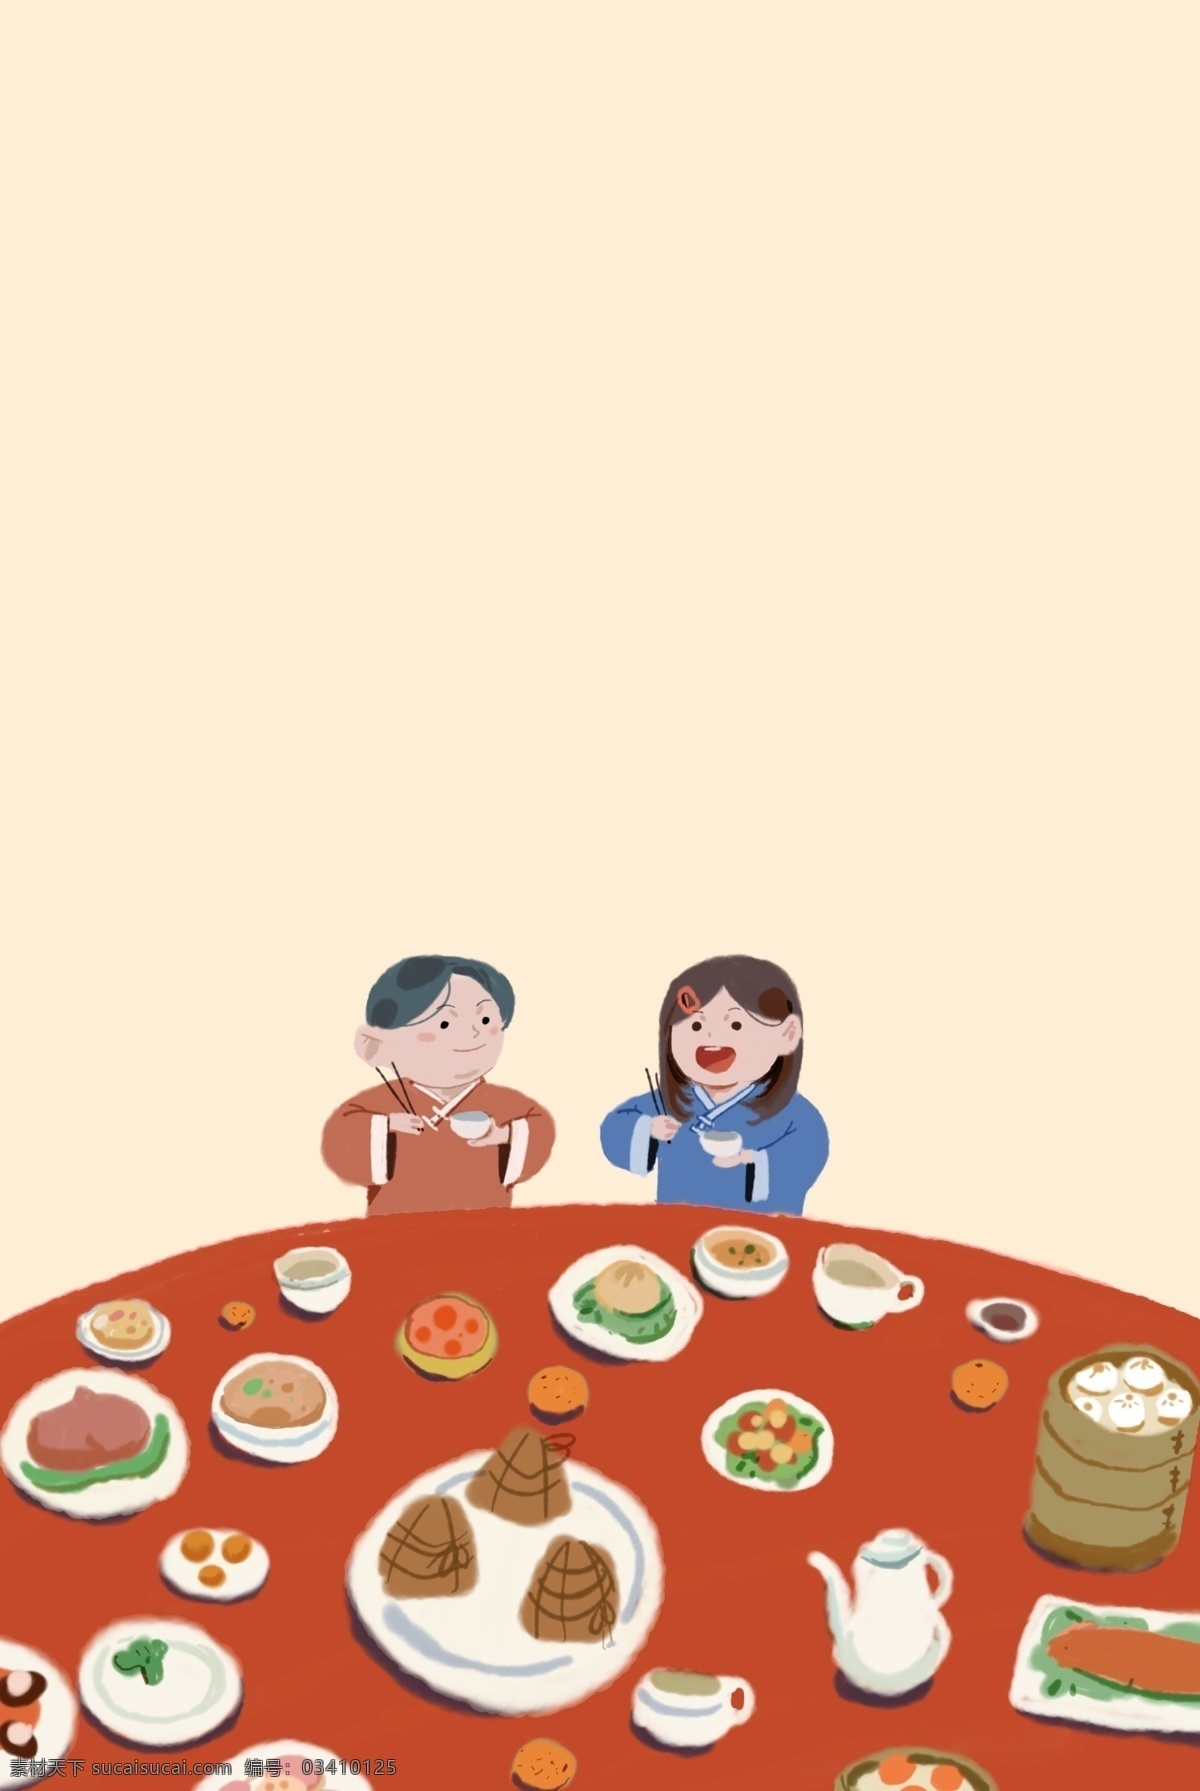 满汉全席 中国 美食 插画 特色 菜肴 人物 家居 酒席 插画风 促销海报